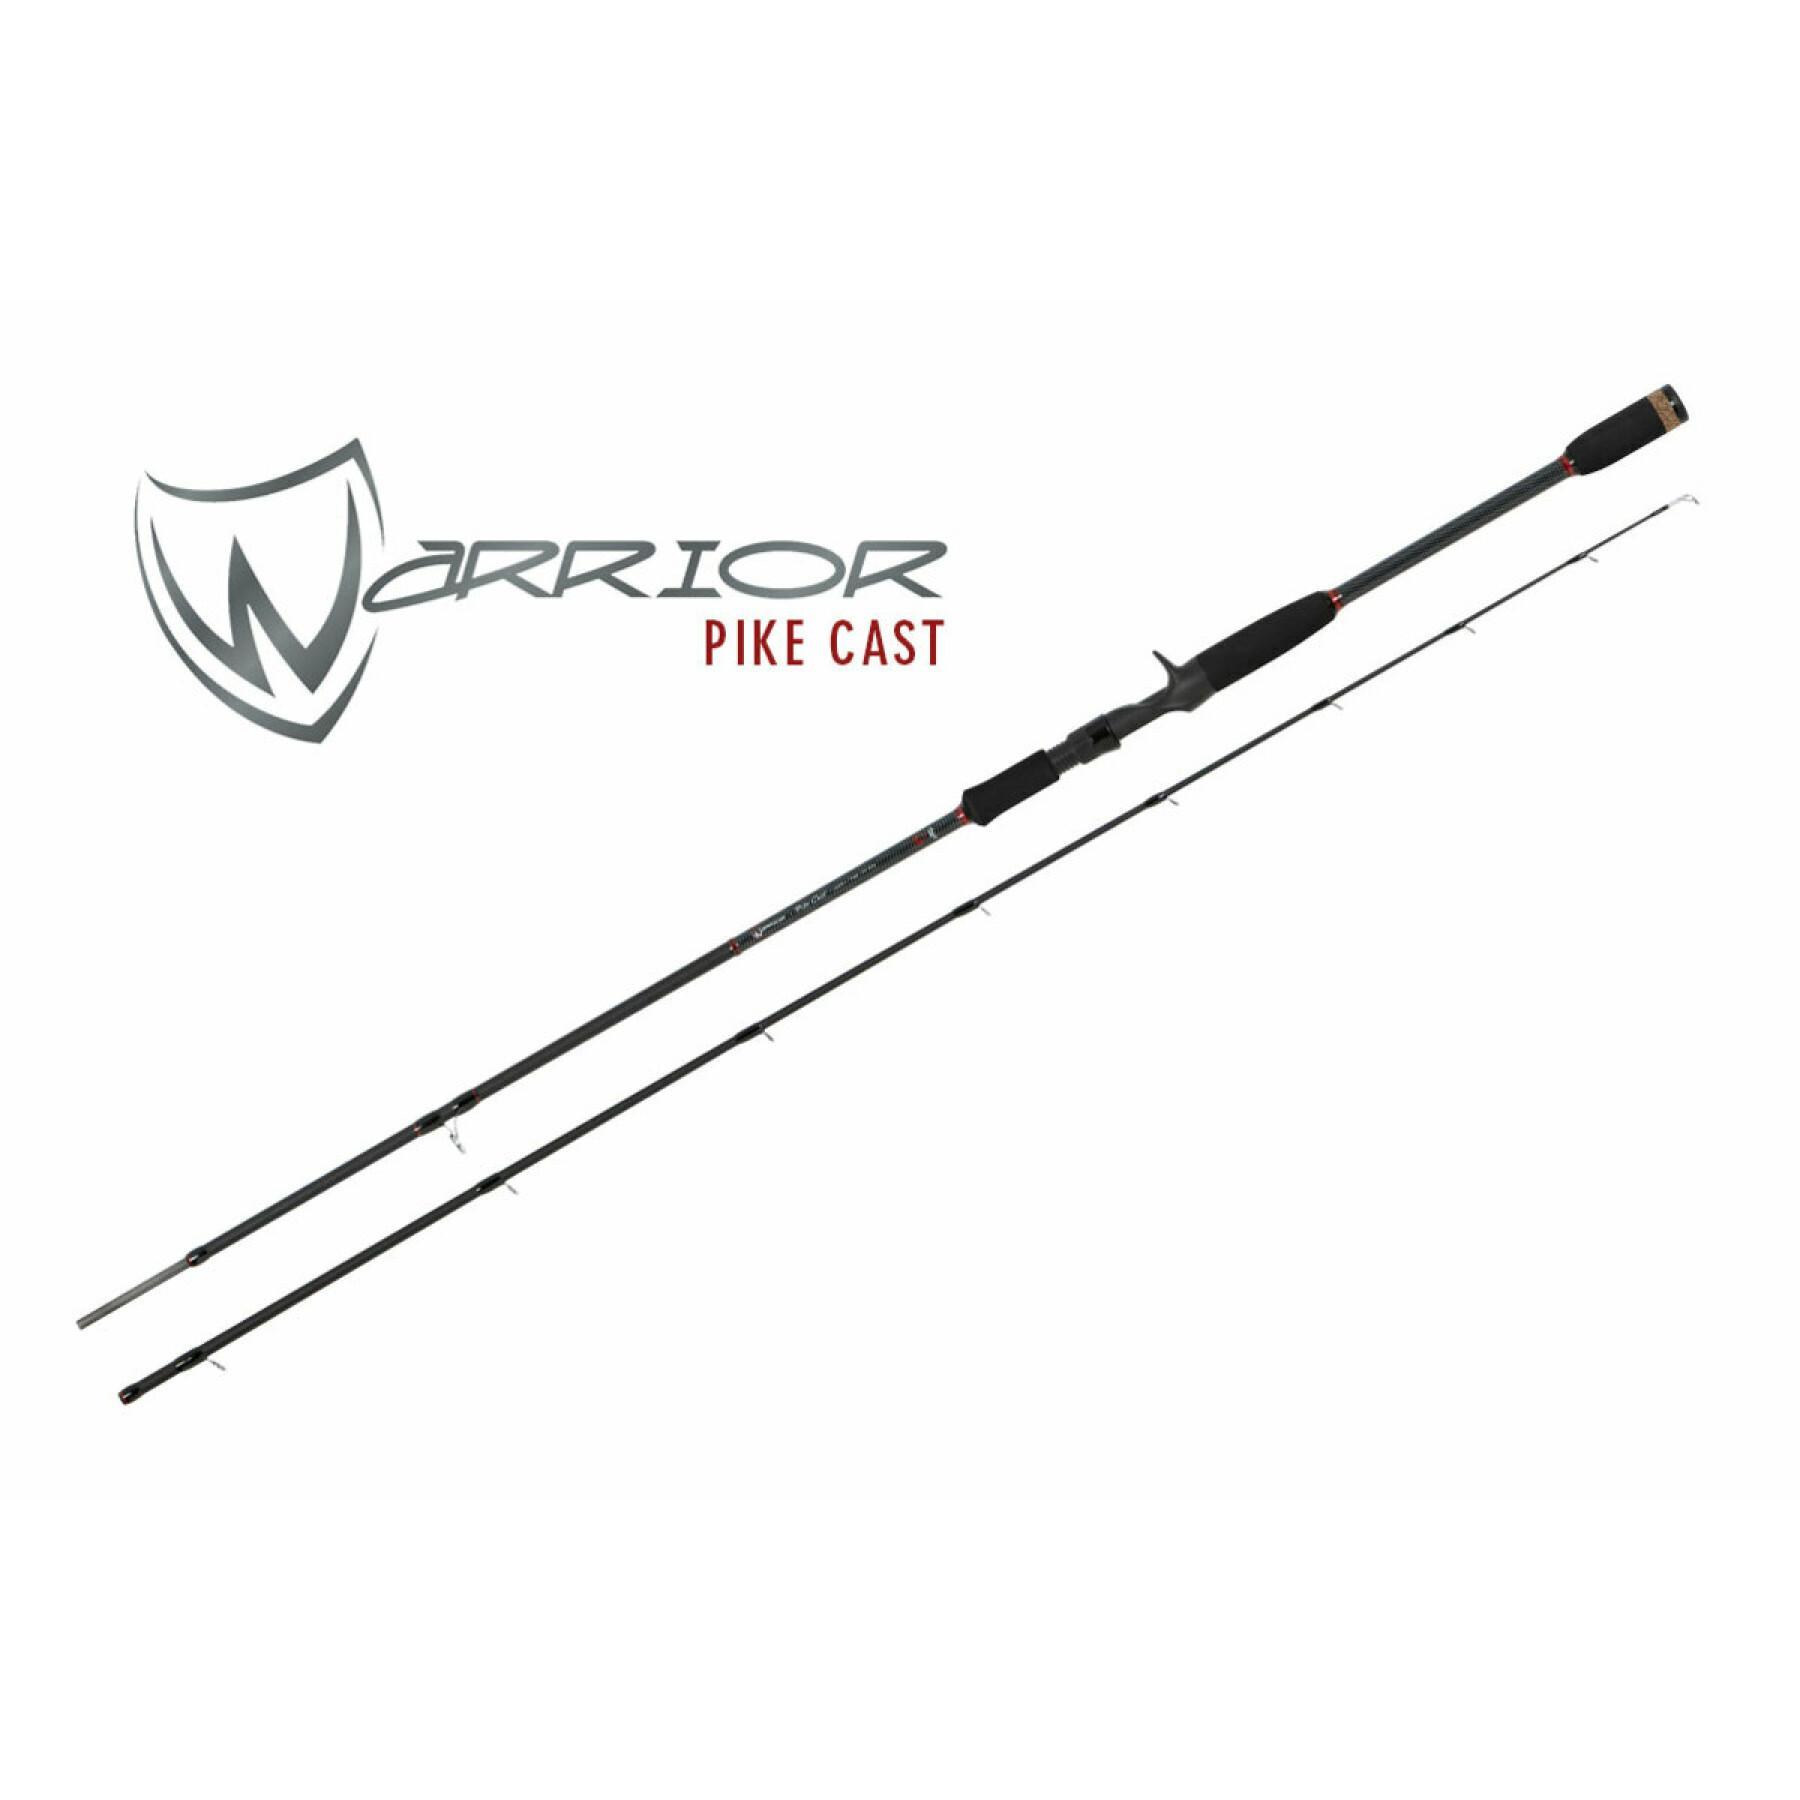 Cane Fox Rage warrior pike cast 225 cm 20-80 g